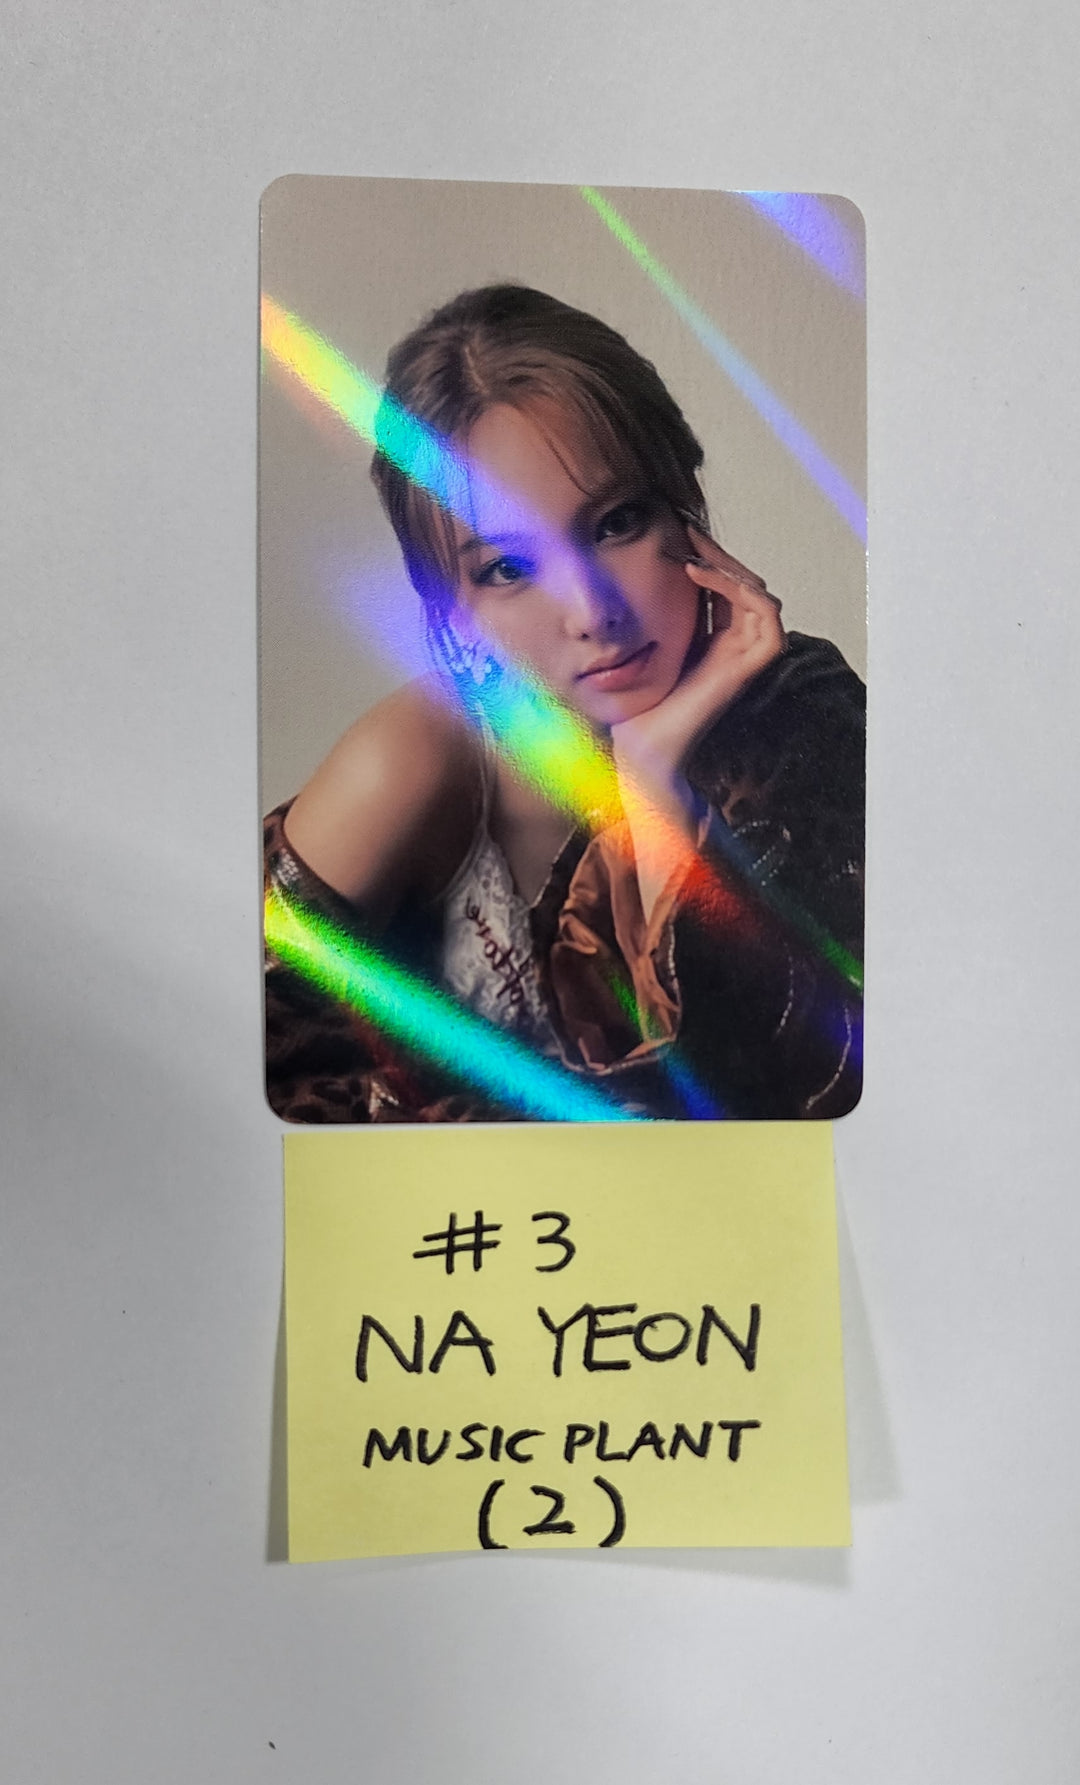 Nayeon "IM NAYEON" - Music Plant Pre-Order Benefit Hologram Photocard